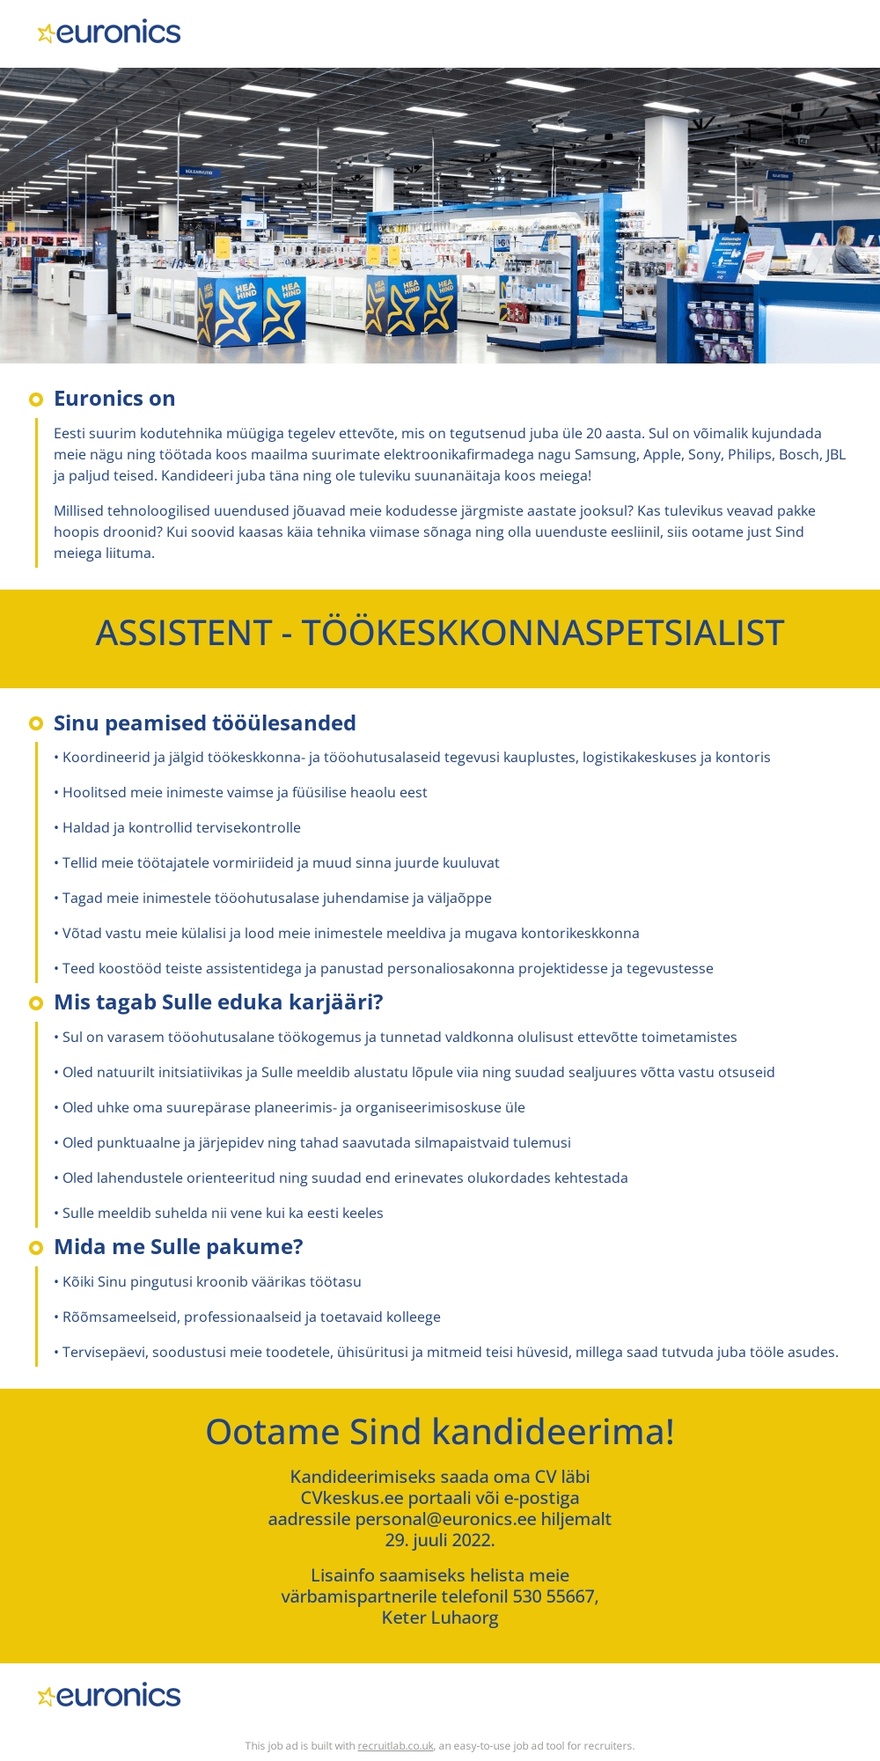 CVKeskus.ee klient Euronicsi assistent-töökeskkonnaspetsialist